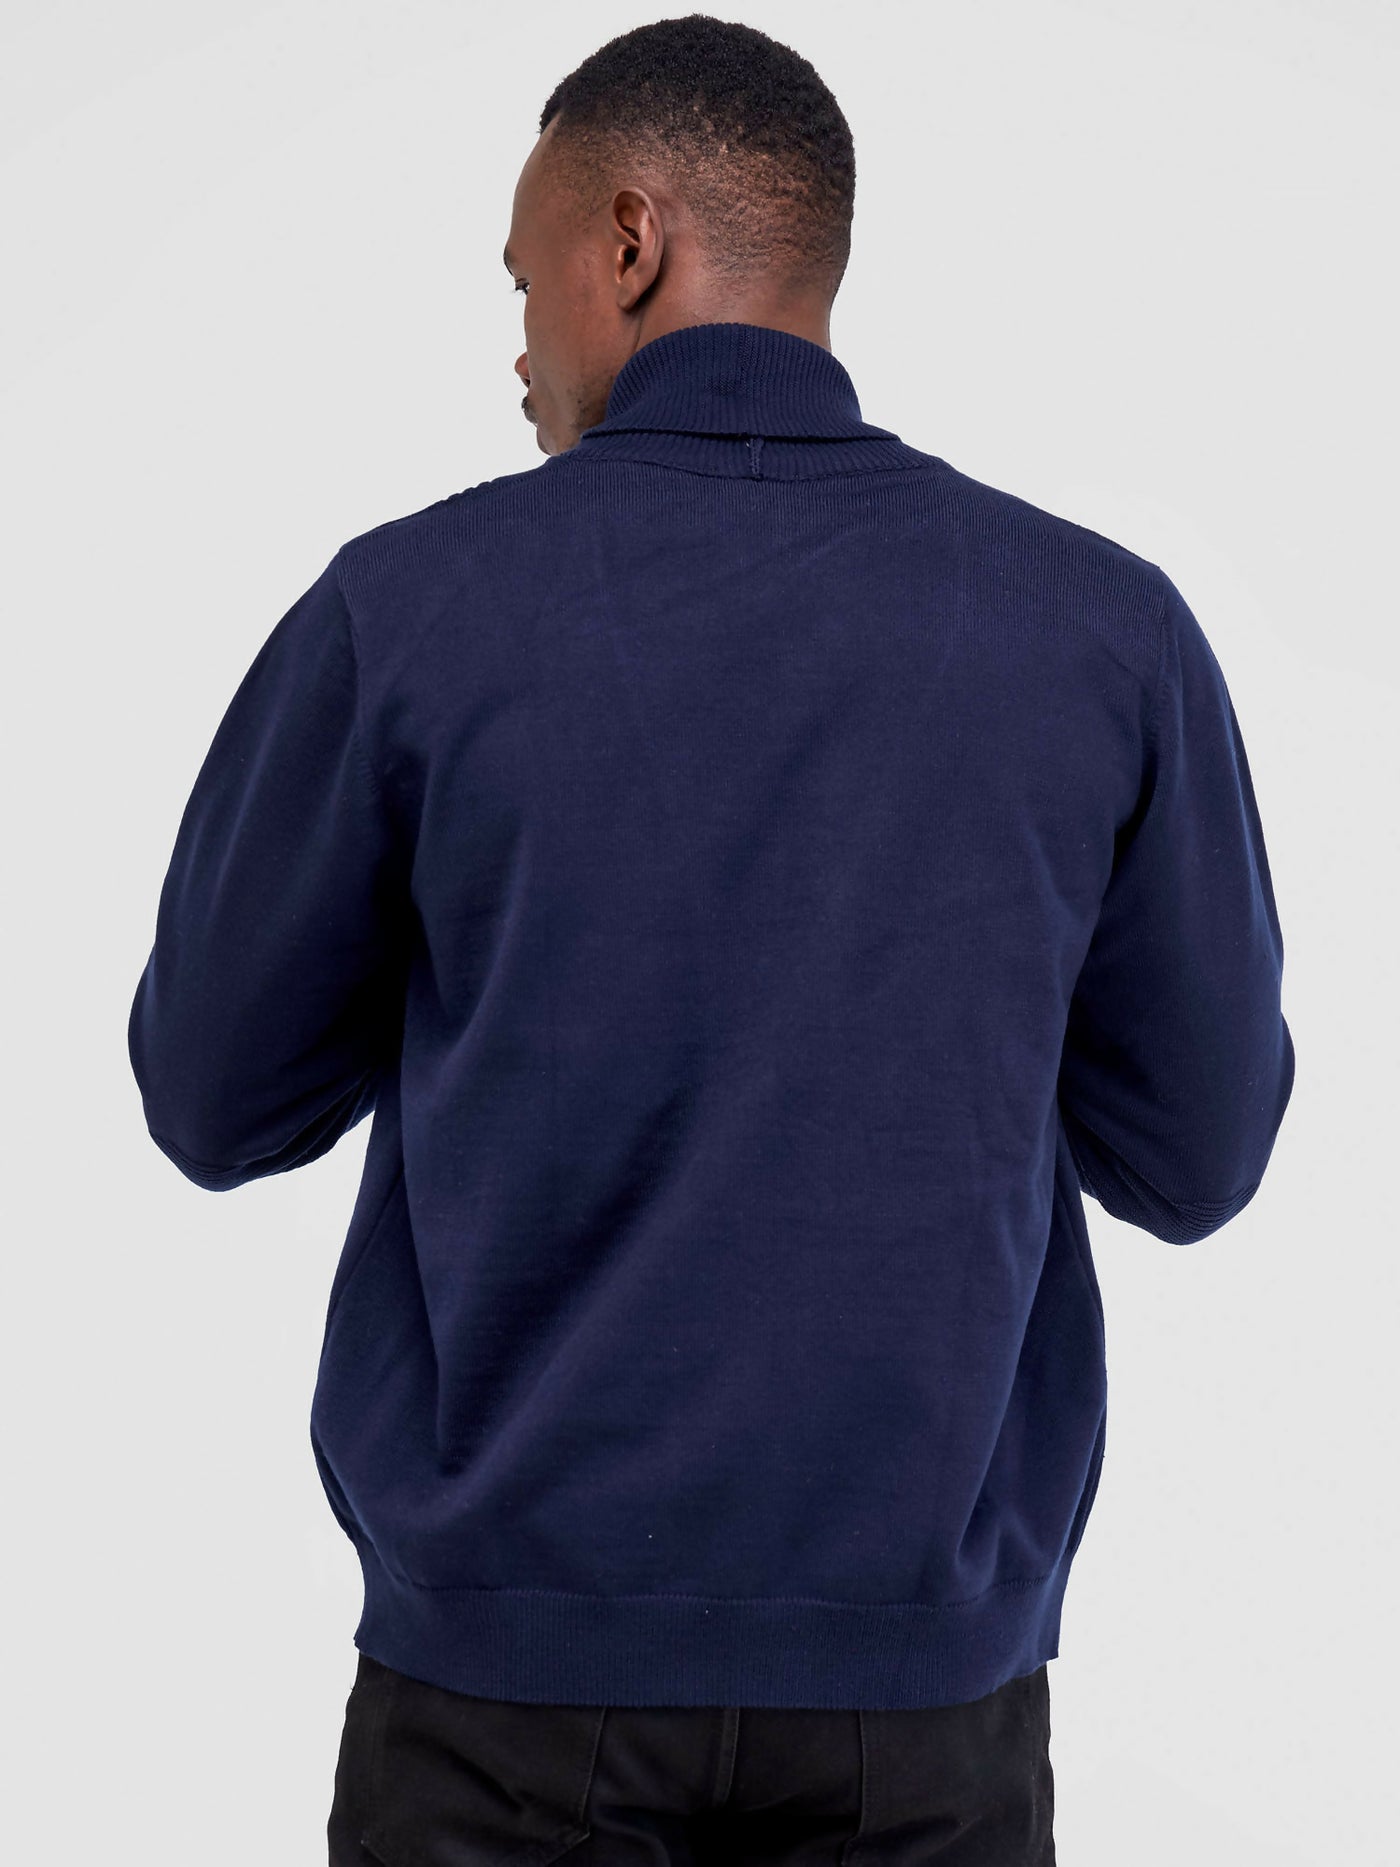 Anel's Knitwear Zetu Men's Half Open Sweater - Navy Blue